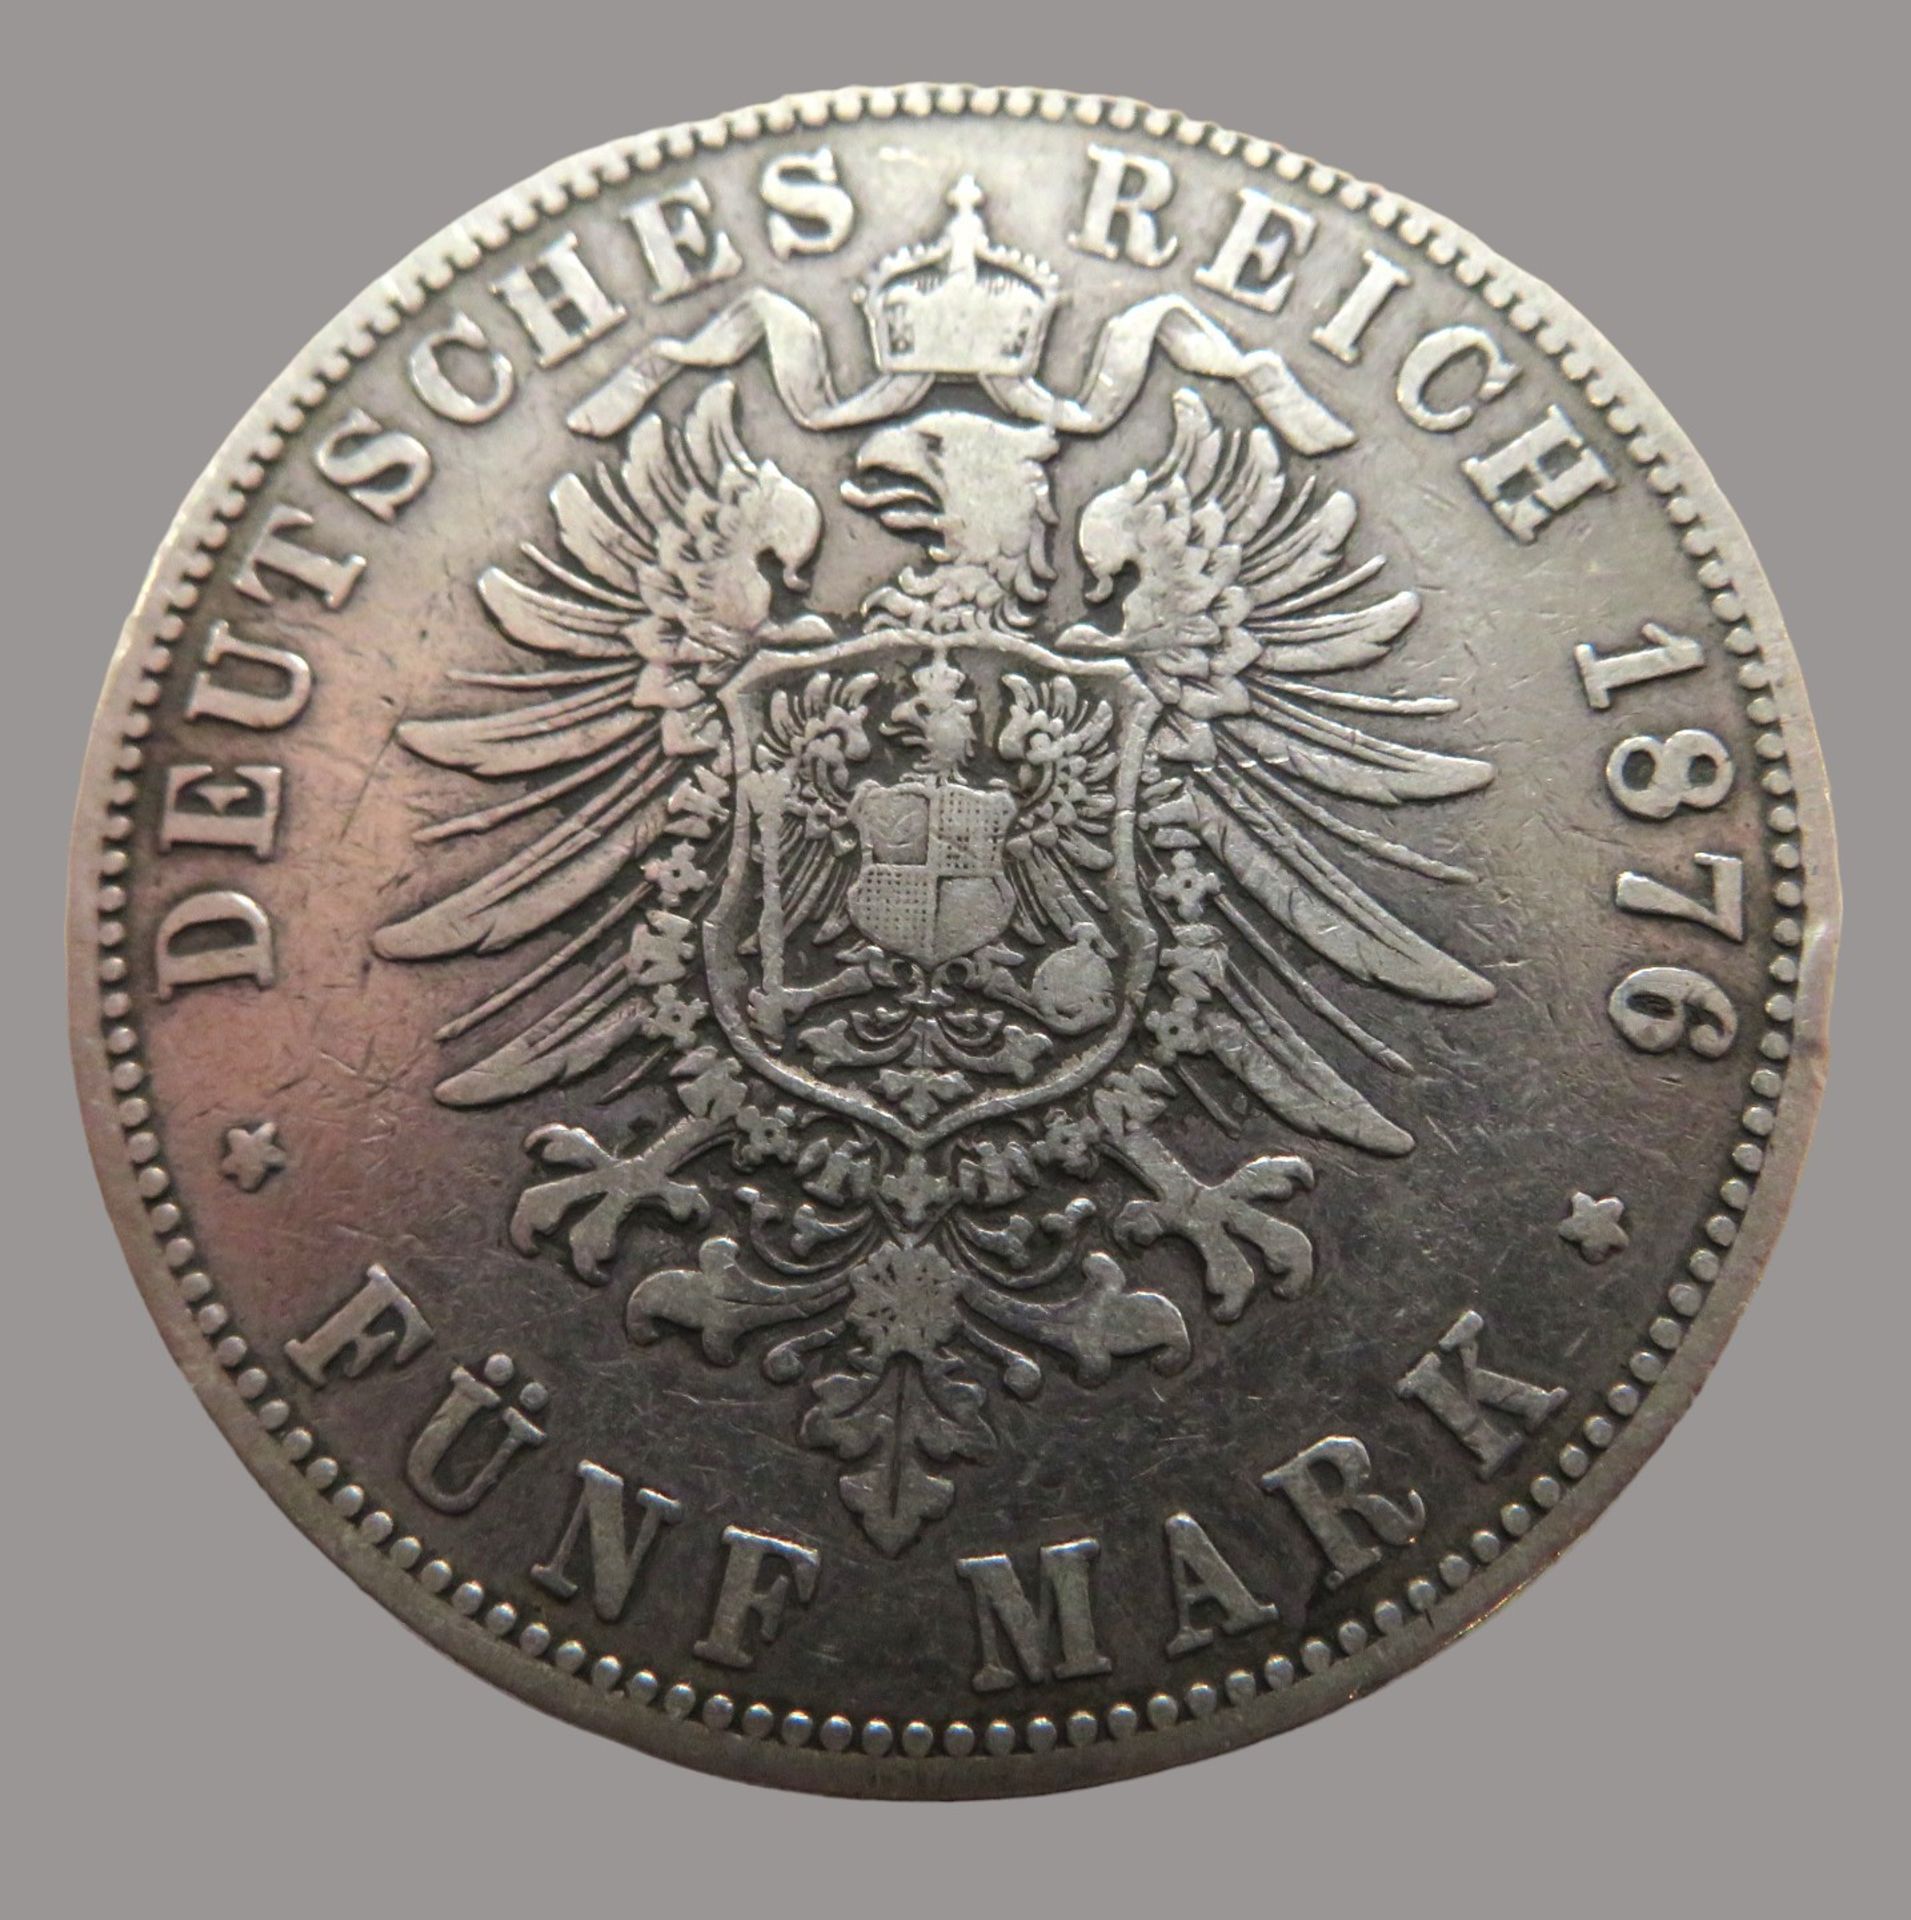 Silbermünze, 5 Mark, Deutsches Reich, Freie und Hansestadt Hamburg, 1876 J, Silber, 67,3 g, d 3,7 c - Bild 2 aus 2